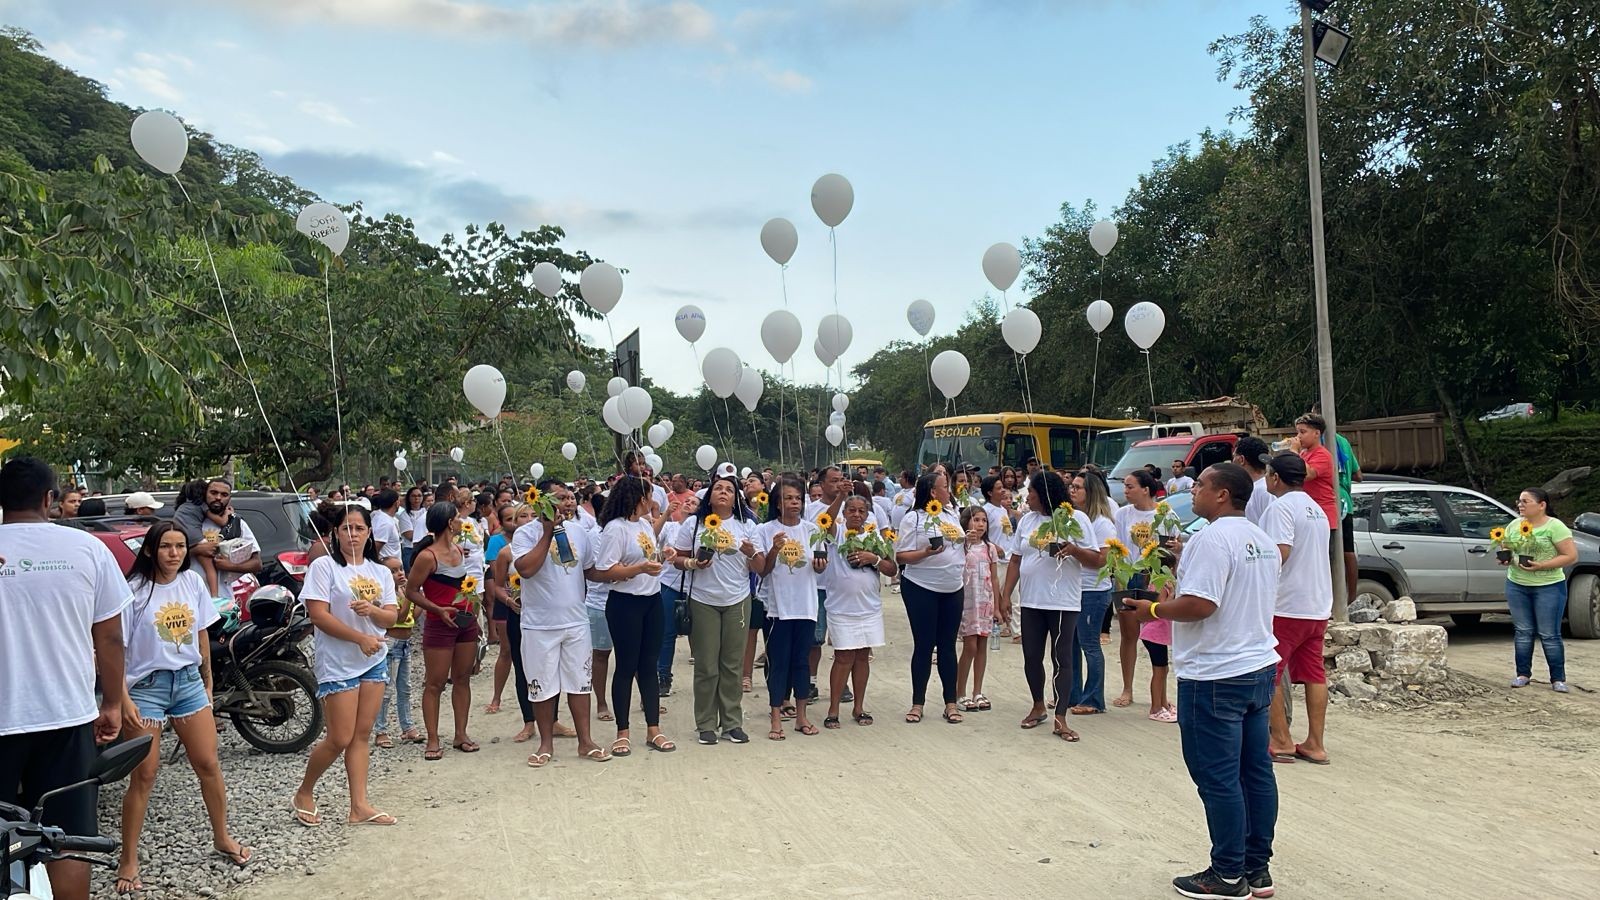 Parentes e amigos soltam balões brancos em homenagem às vítimas da tragédia em São Sebastião, SP